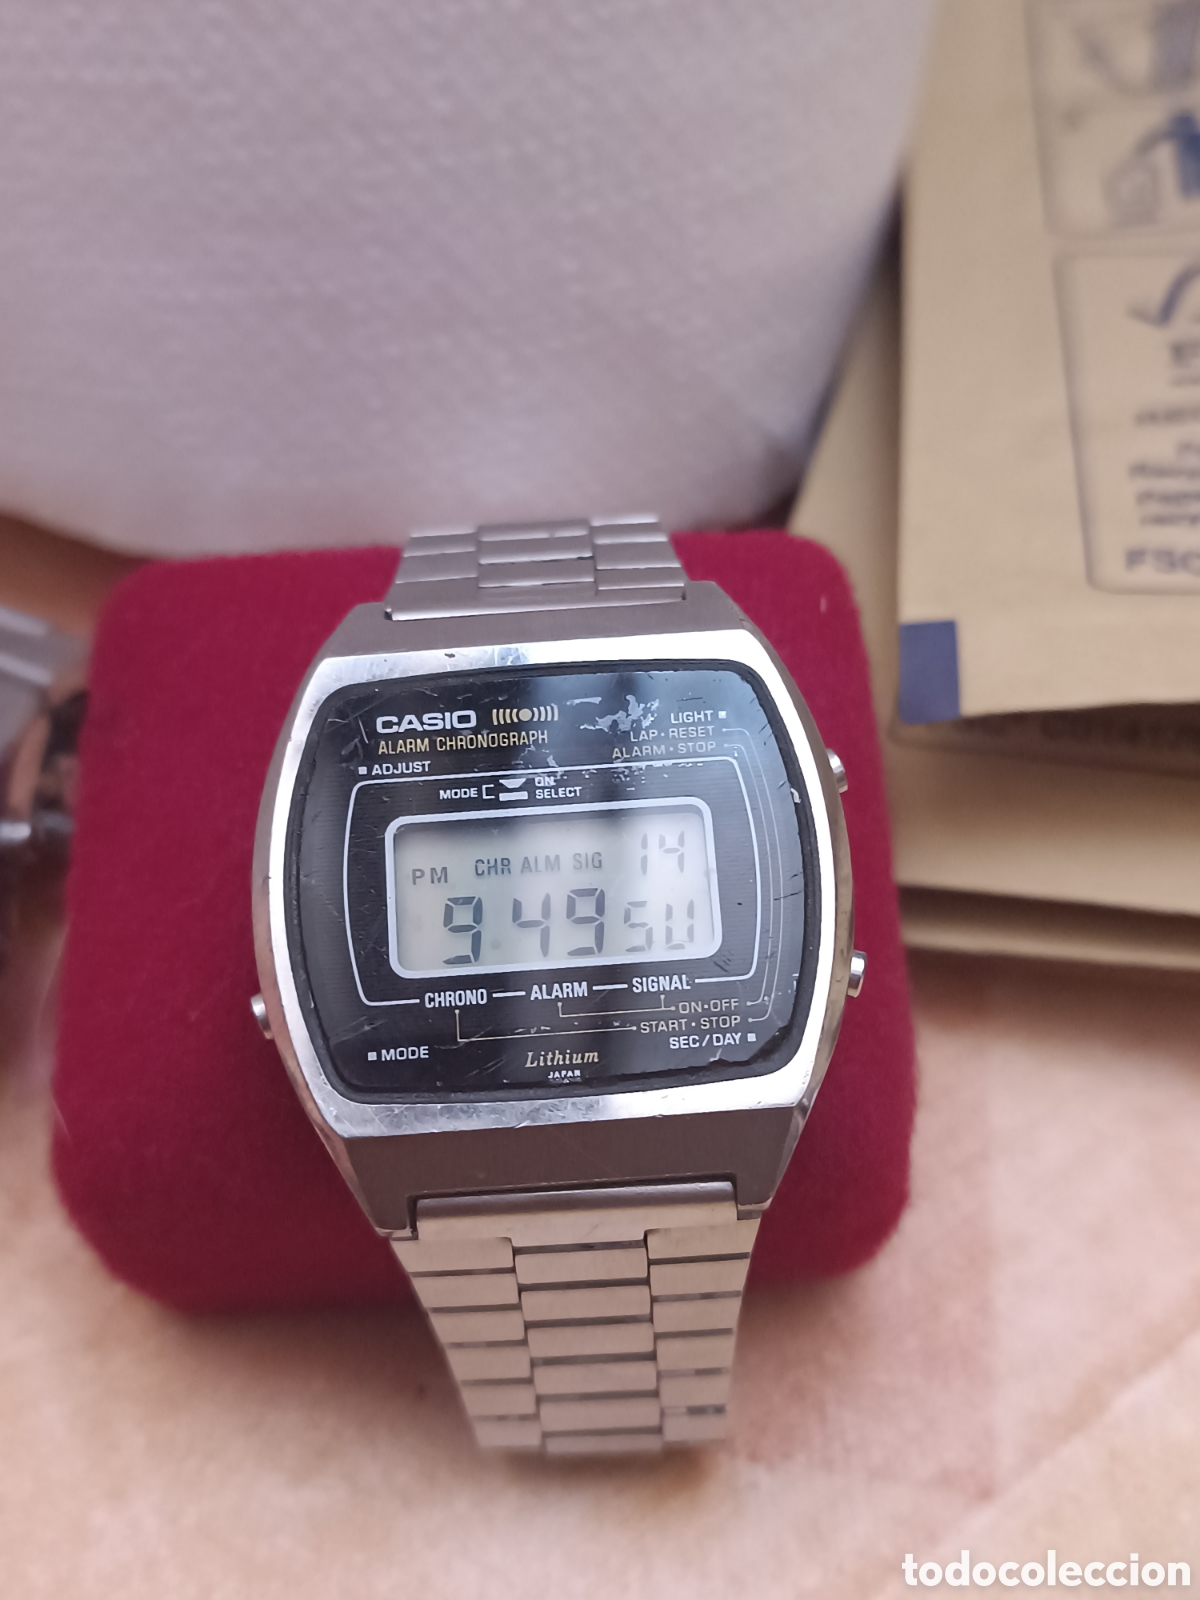 de colección casio 83qs-41a directo del m - Comprar Relojes Vintage Antiguos todocoleccion - 372383309